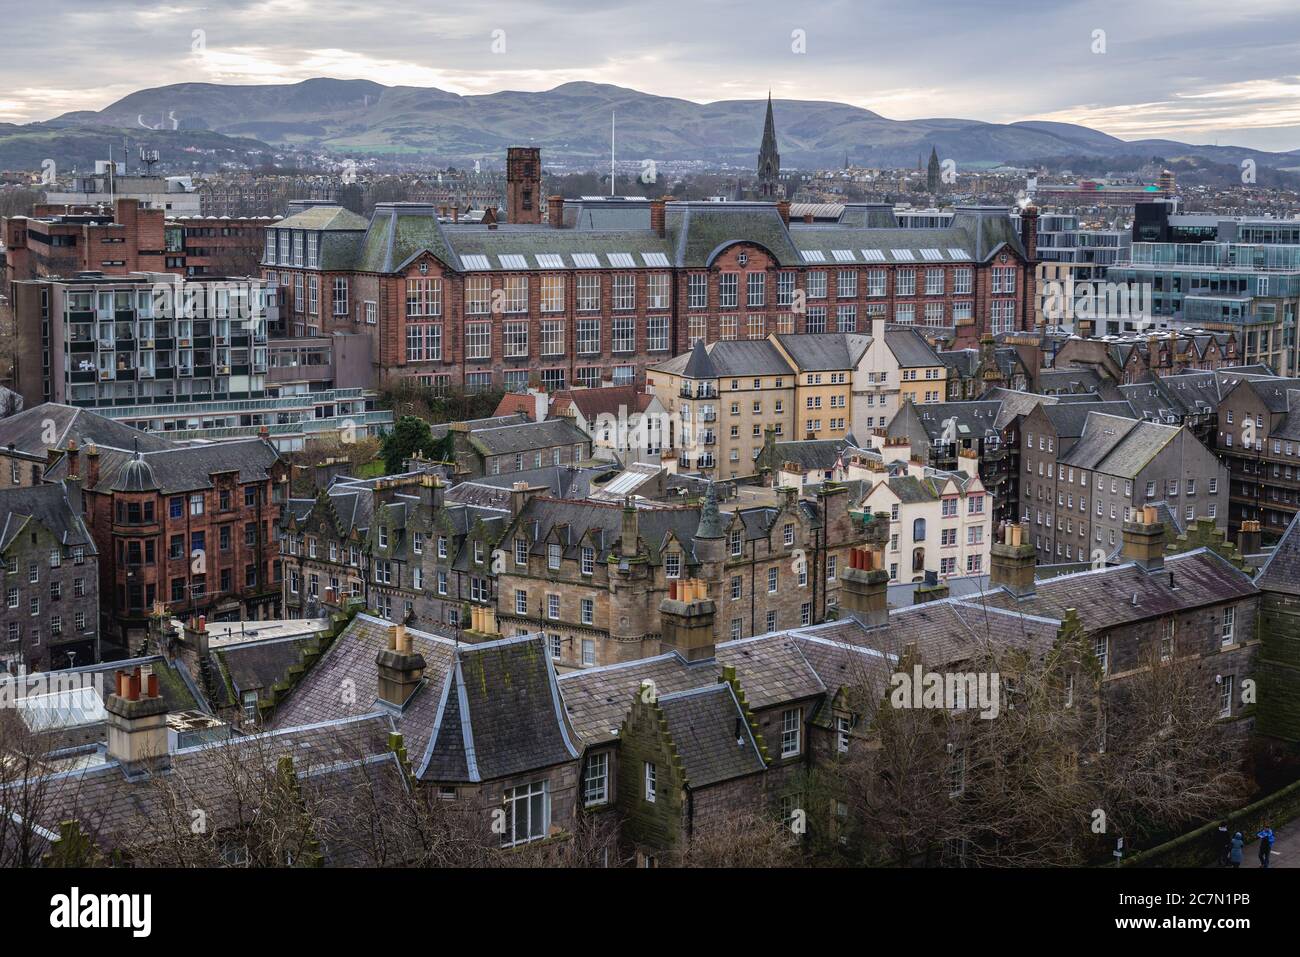 Vue aérienne depuis l'esplanade du château d'Édimbourg, capitale de l'Écosse, partie de l'OK, Campus Lauriston de l'Université d'Édimbourg au milieu Banque D'Images